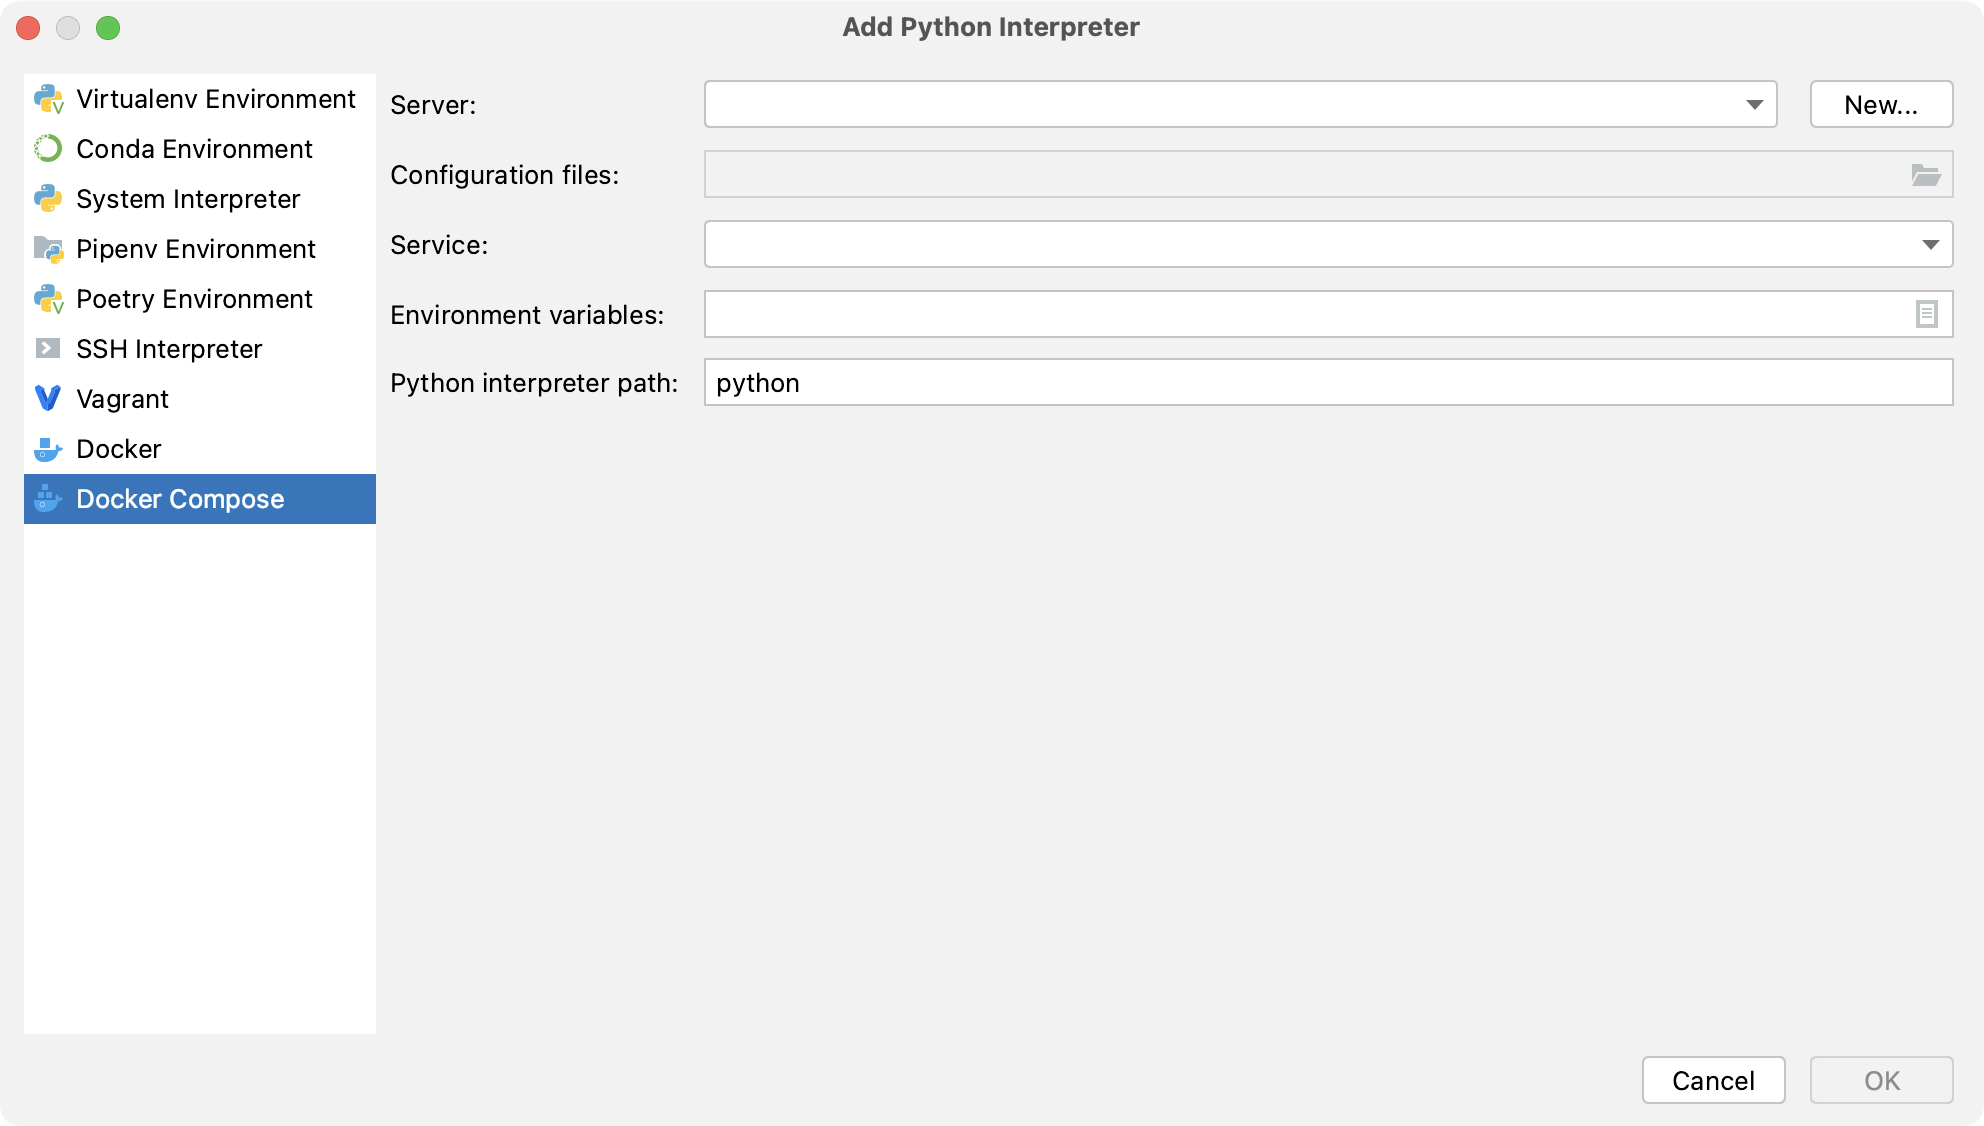 Adding a Python interpreter using Docker Compose